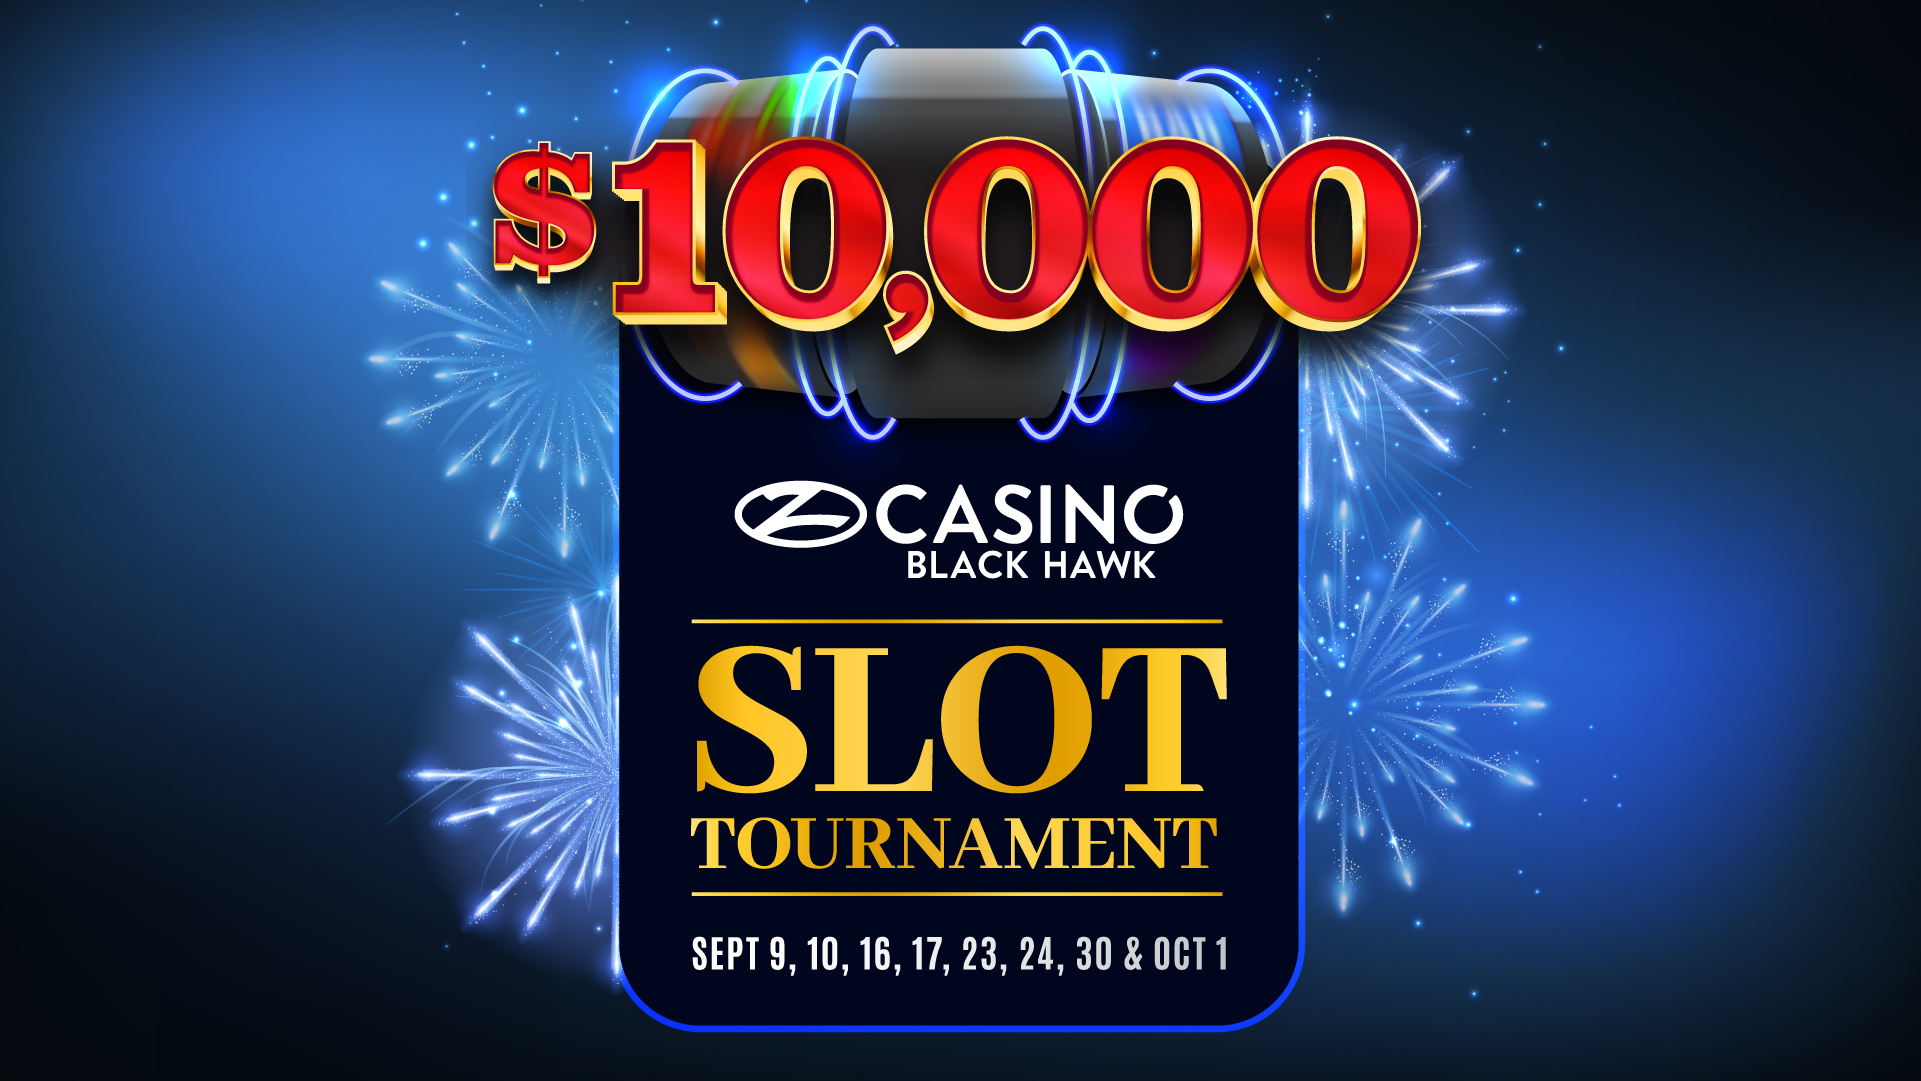 $10,000 Slot Tournament